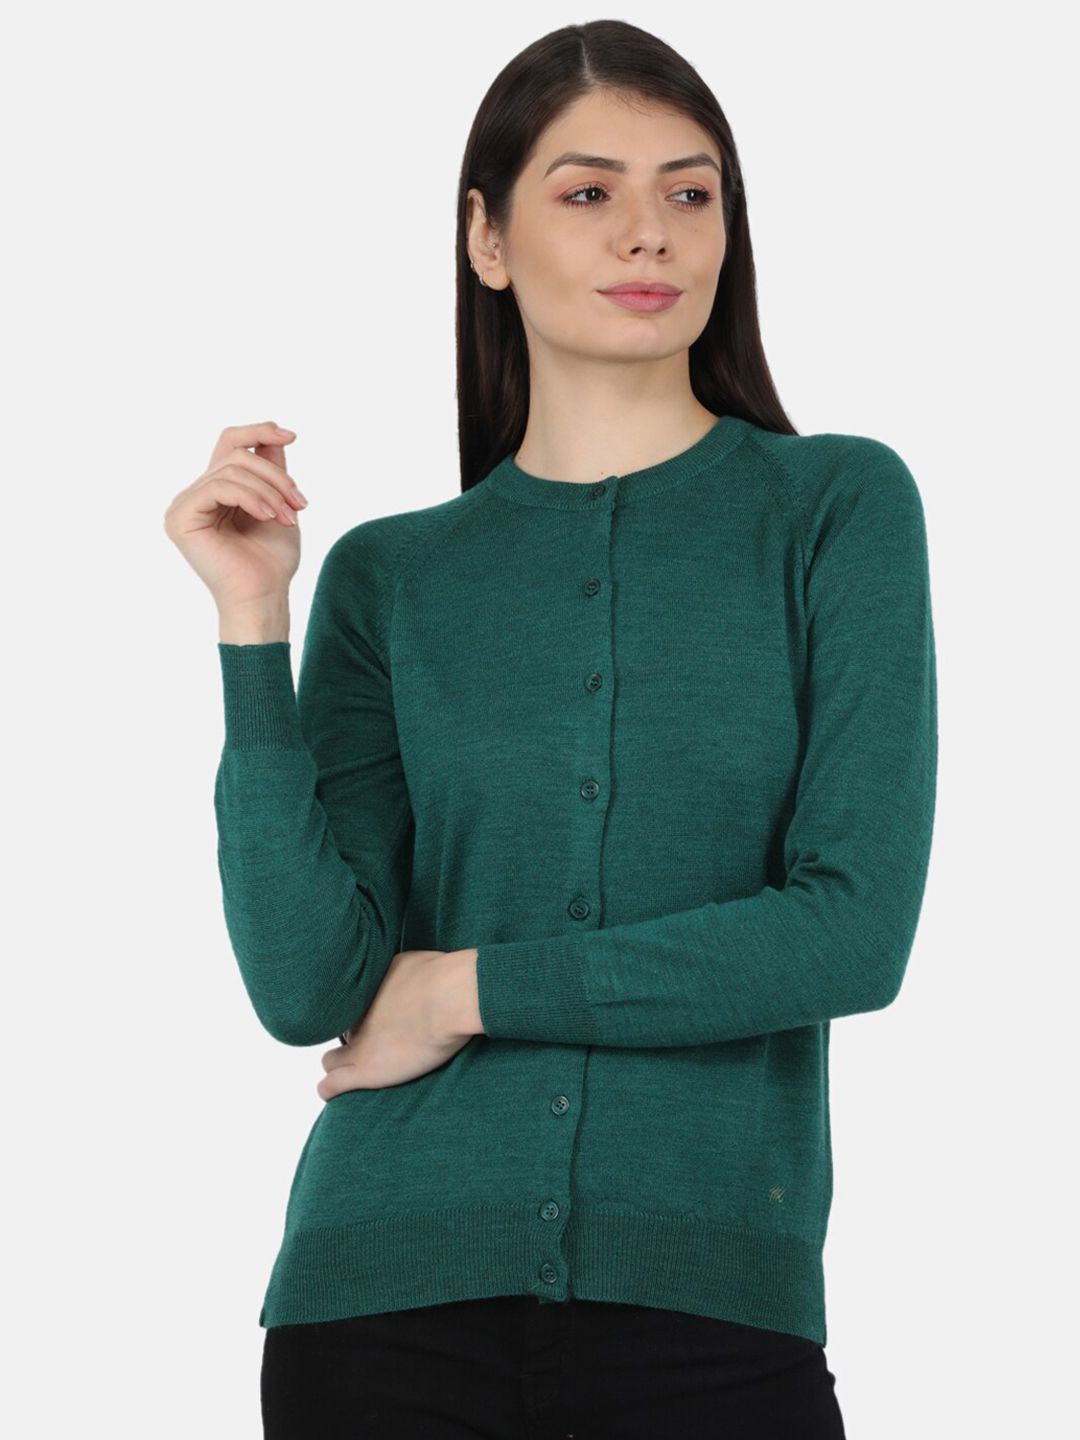 Monte Carlo Women Green Cardigan sweater Price in India